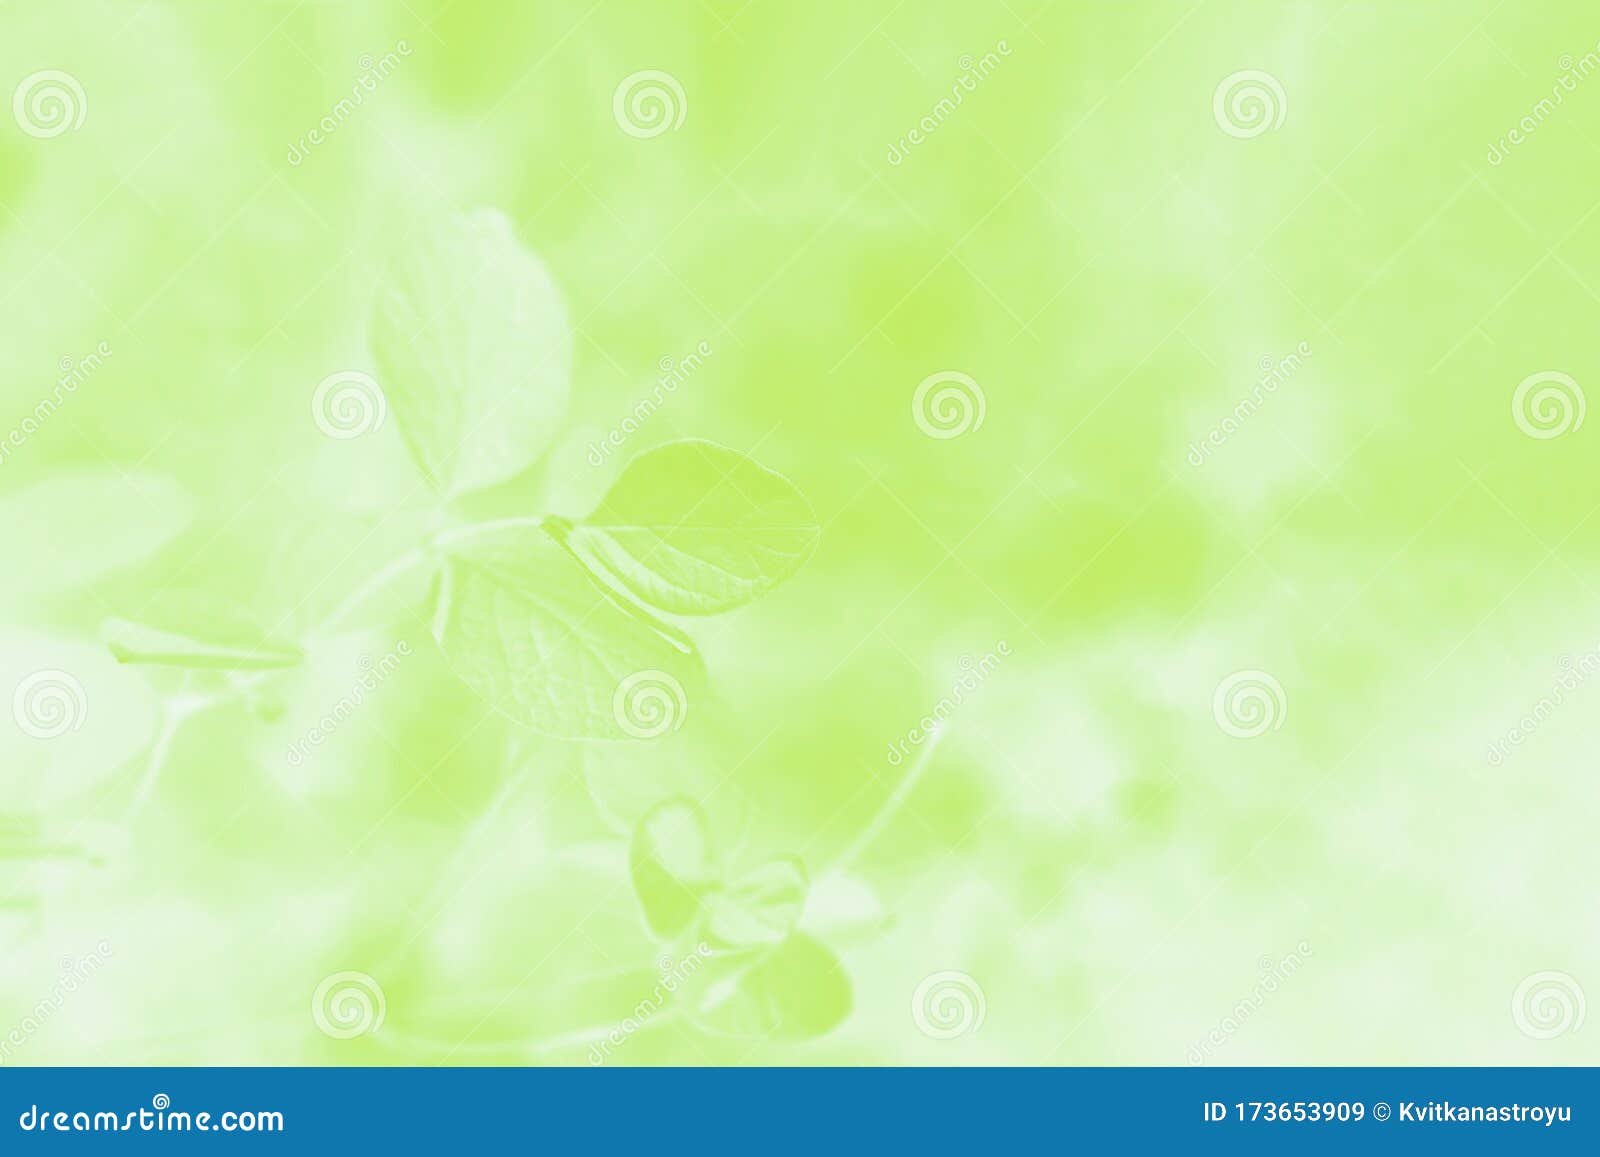 Nếu bạn muốn có một hình nền trừu tượng màu xanh lá cây đẹp mắt và đầy sức sống thì hãy xem hình ảnh liên quan. Với gradient màu xanh lá cây sang trọng và chi tiết hoa lá, nền trừu tượng này sẽ khiến bất kỳ ai nhìn thấy đều phải trầm trồ.